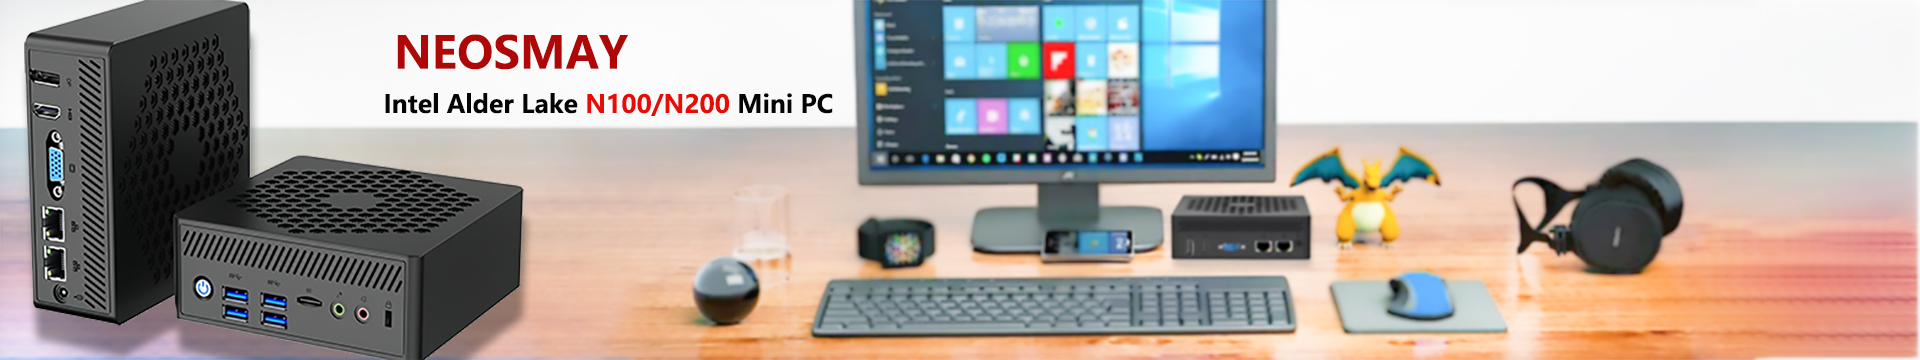 Newsmay mini PC Store 